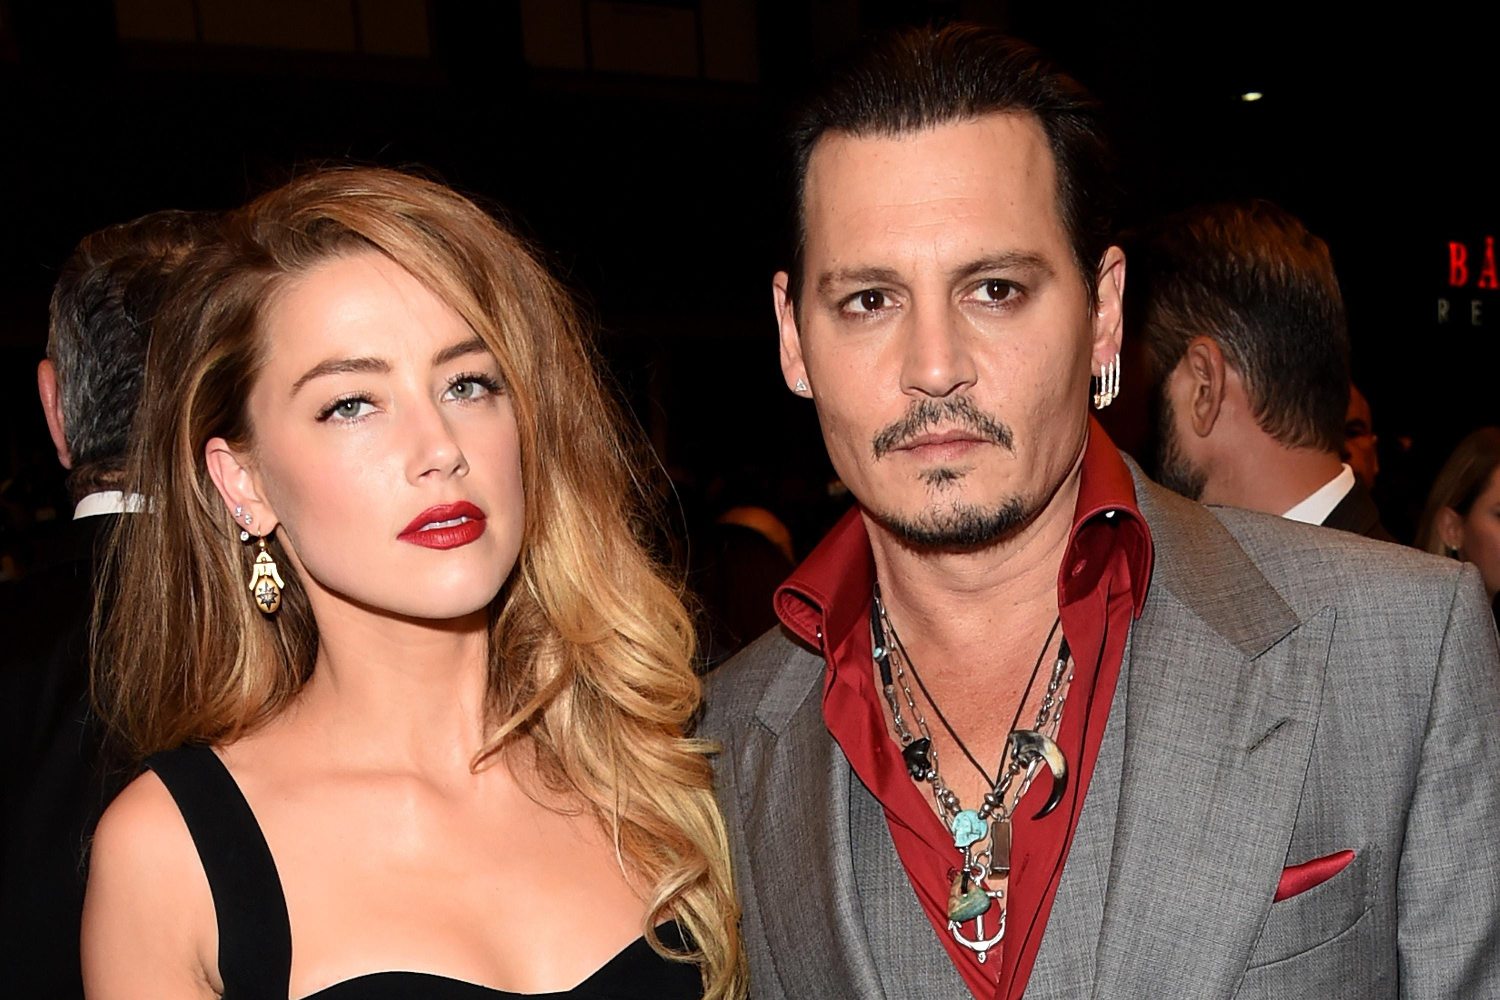 Johnny Depp vence na Justiça e continuará processo contra Amber Heard